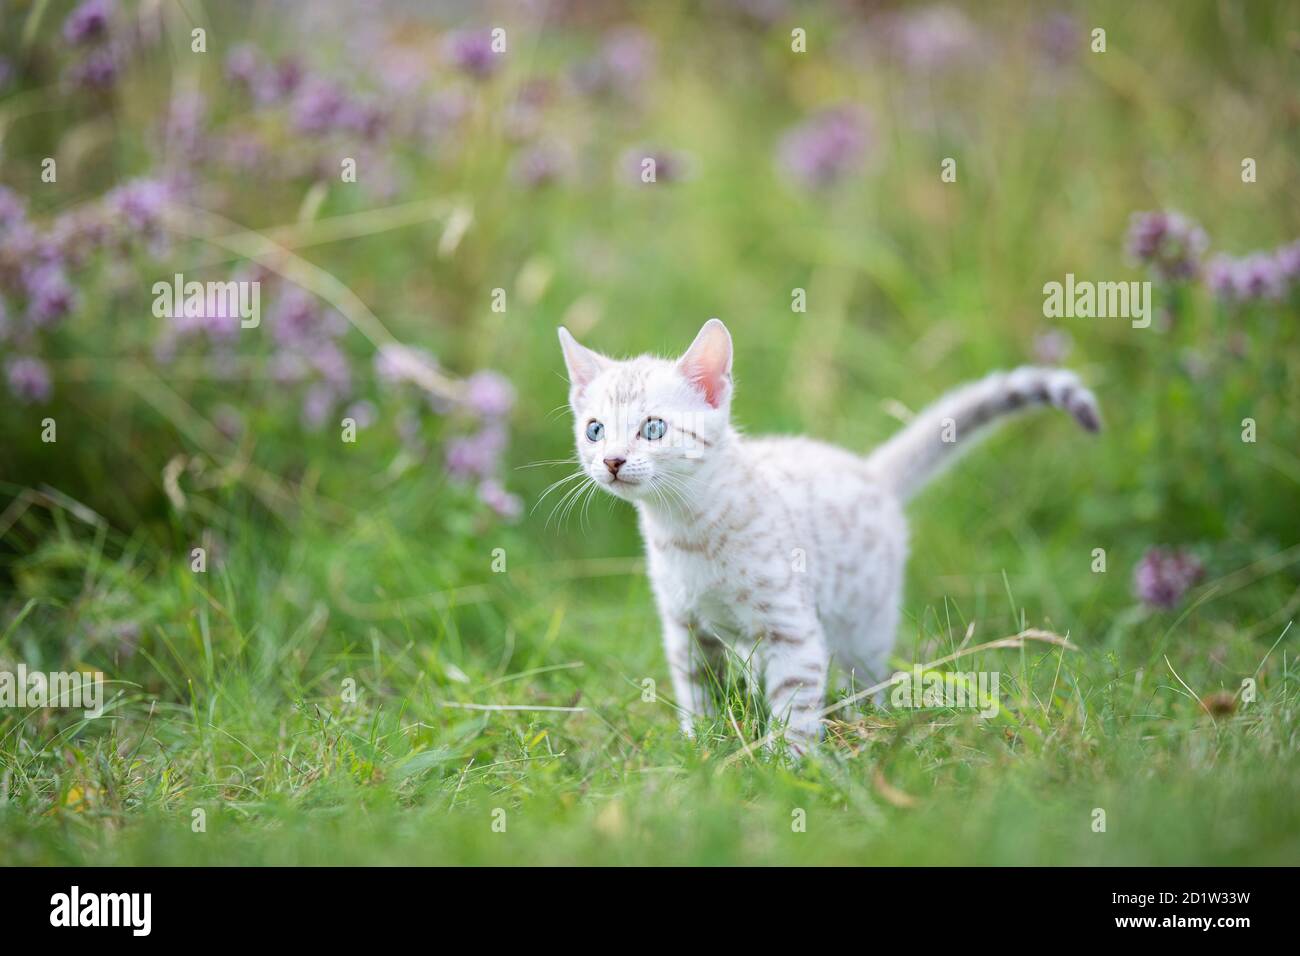 Un adorable petit chaton bengal blanc en plein air dans l'herbe. Le petit chat curieux a 7 semaines, et elle regarde loin. Avec quelques fleurs violettes Banque D'Images